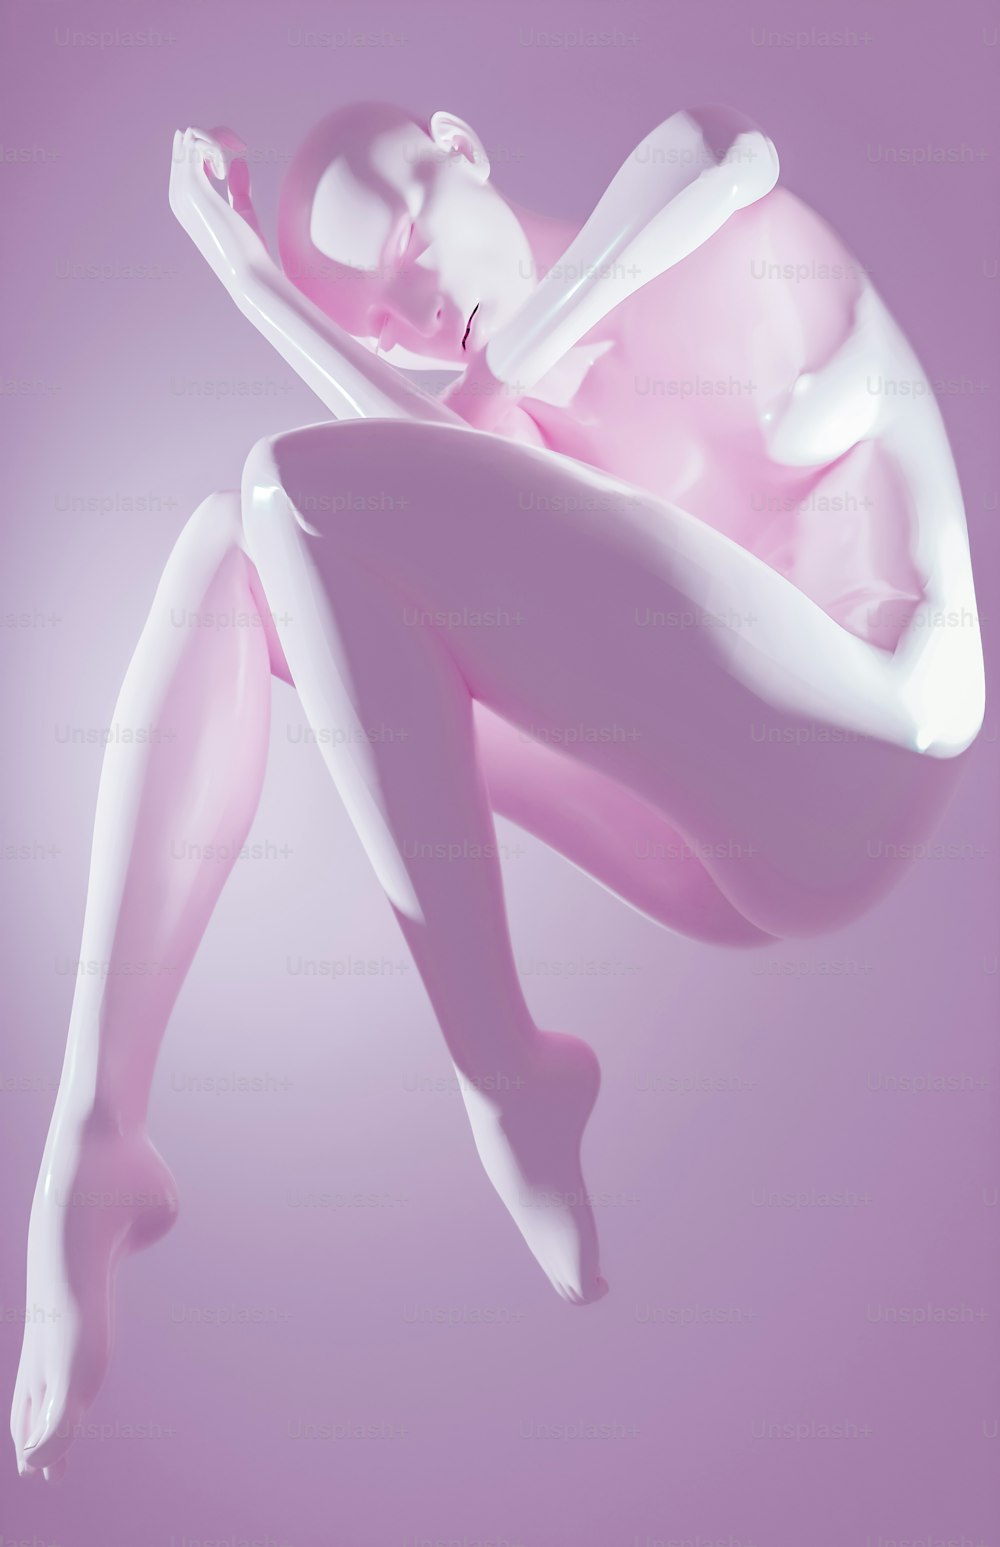 Una foto rosa e bianca di una donna che fluttua nell'aria